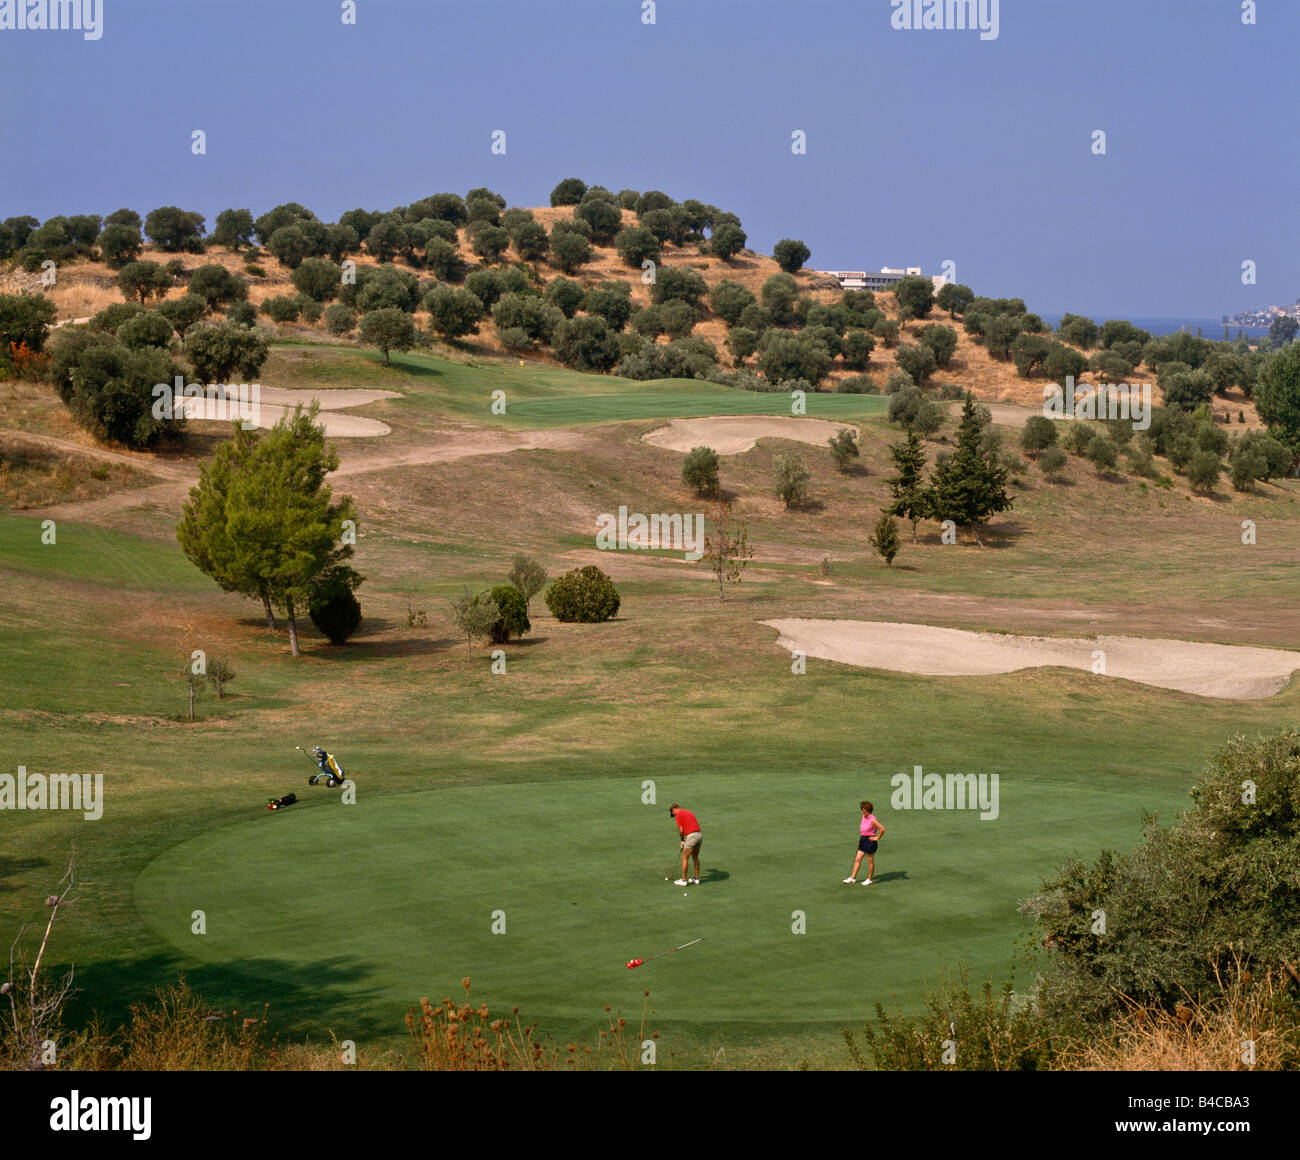 Golf course of Porto Carras Sithonia Halkidiki Greece Stock Photo - Alamy